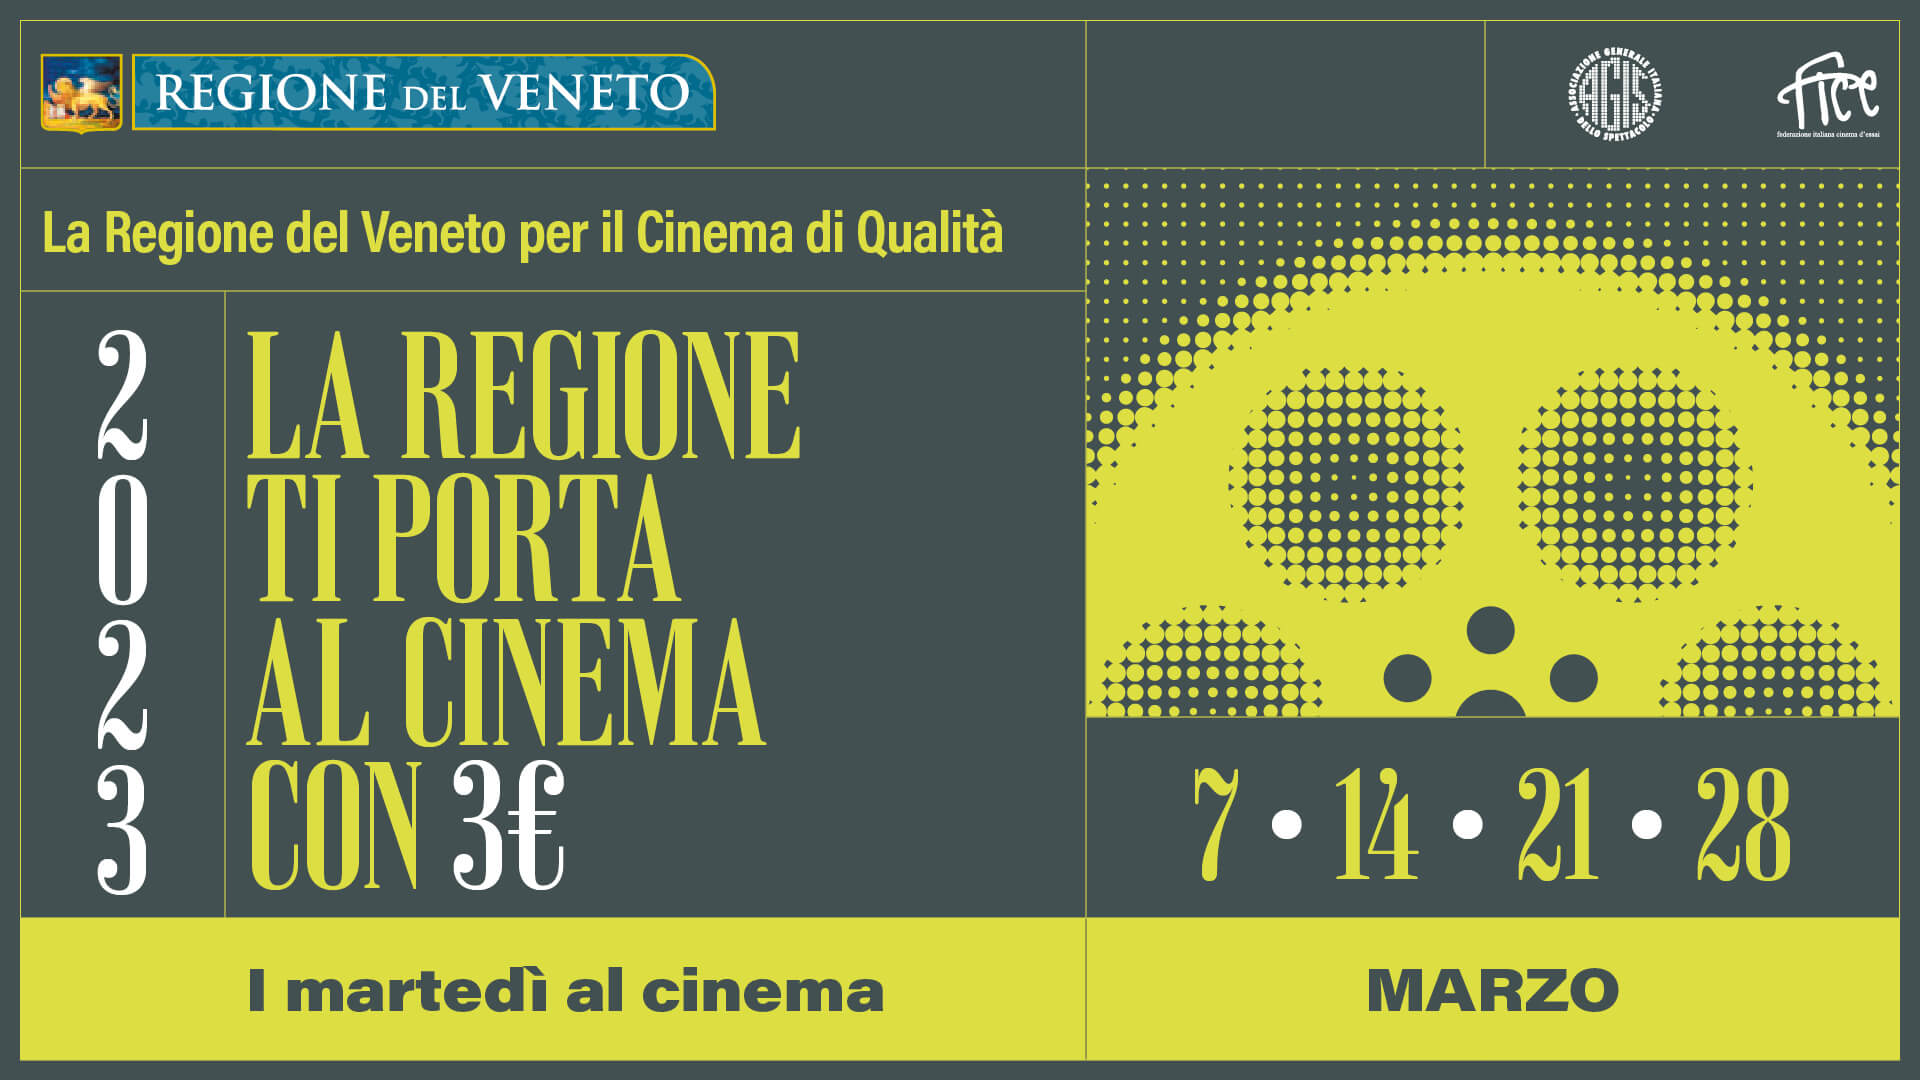 Tutte le sale in cui nel Veneto sino al 31 marzo si può andare al cinema a 3€